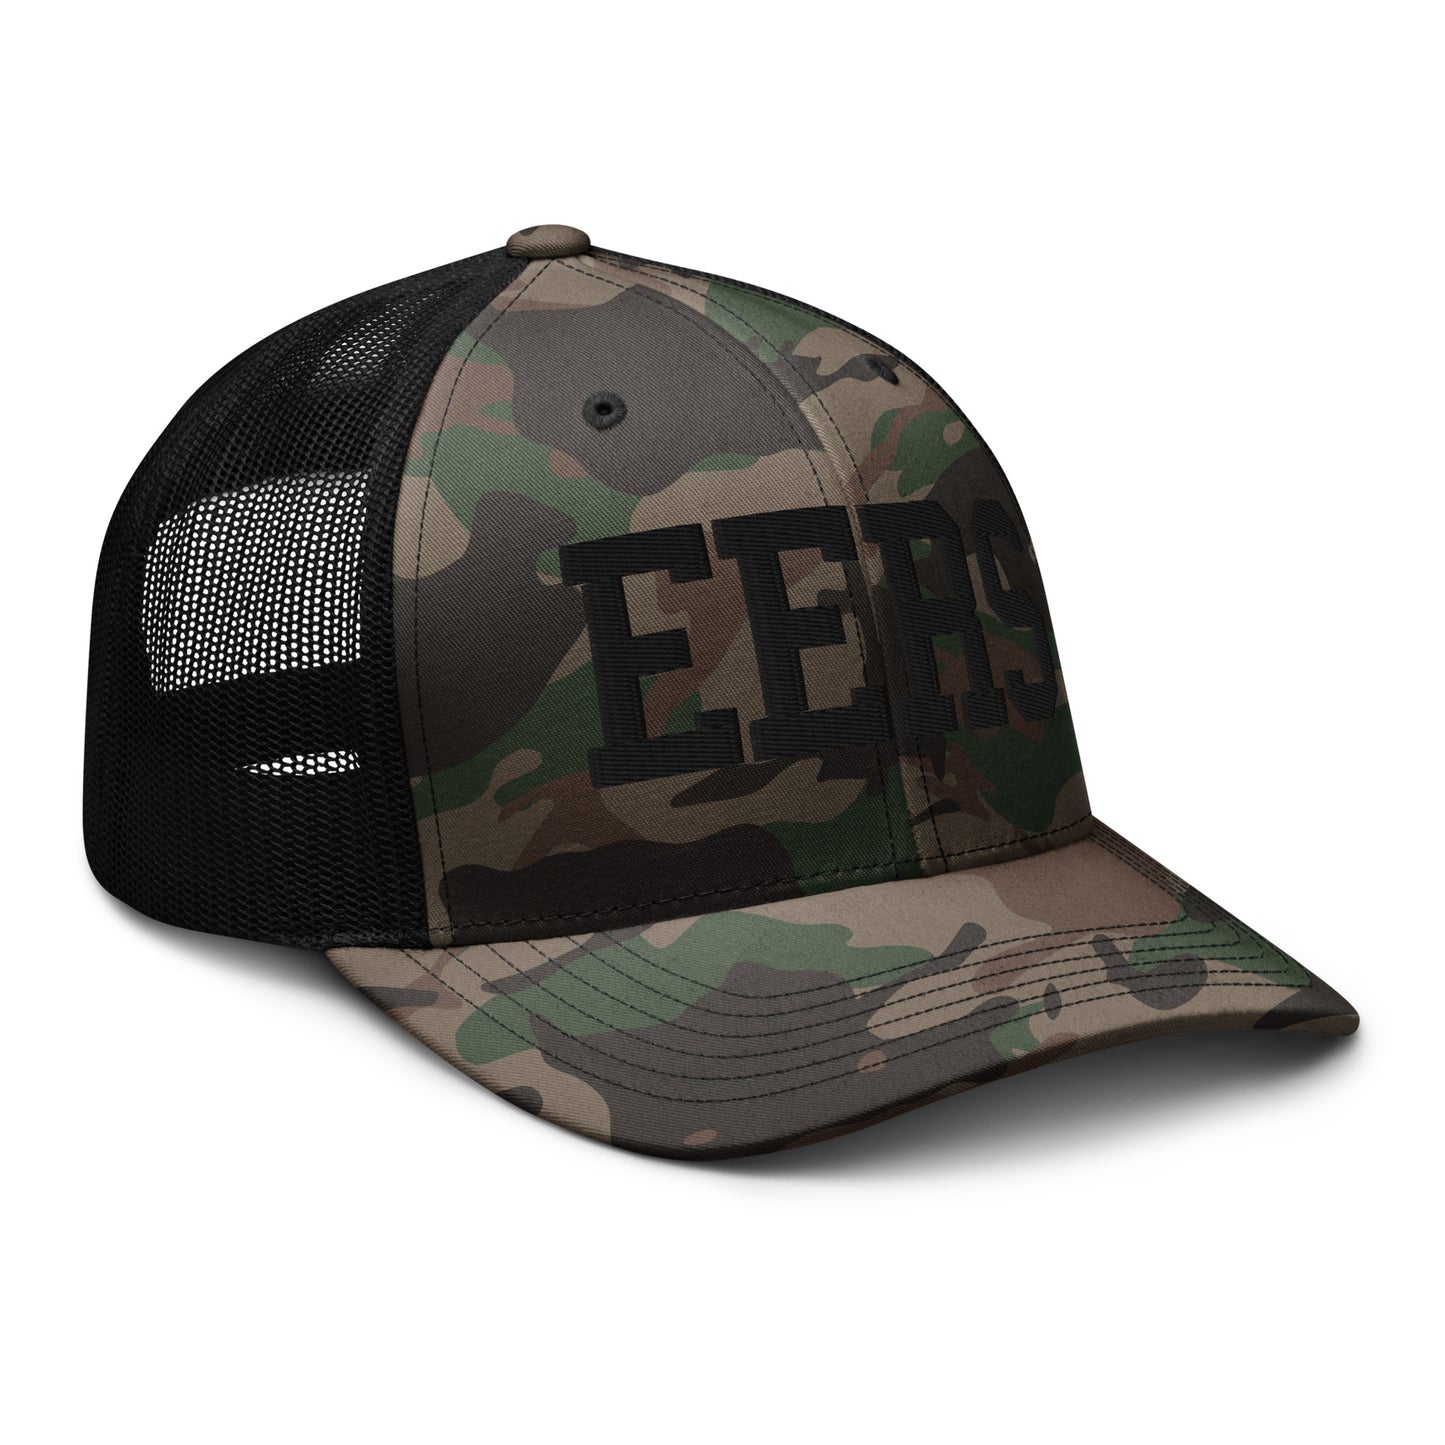 EERS-Camouflage trucker hat